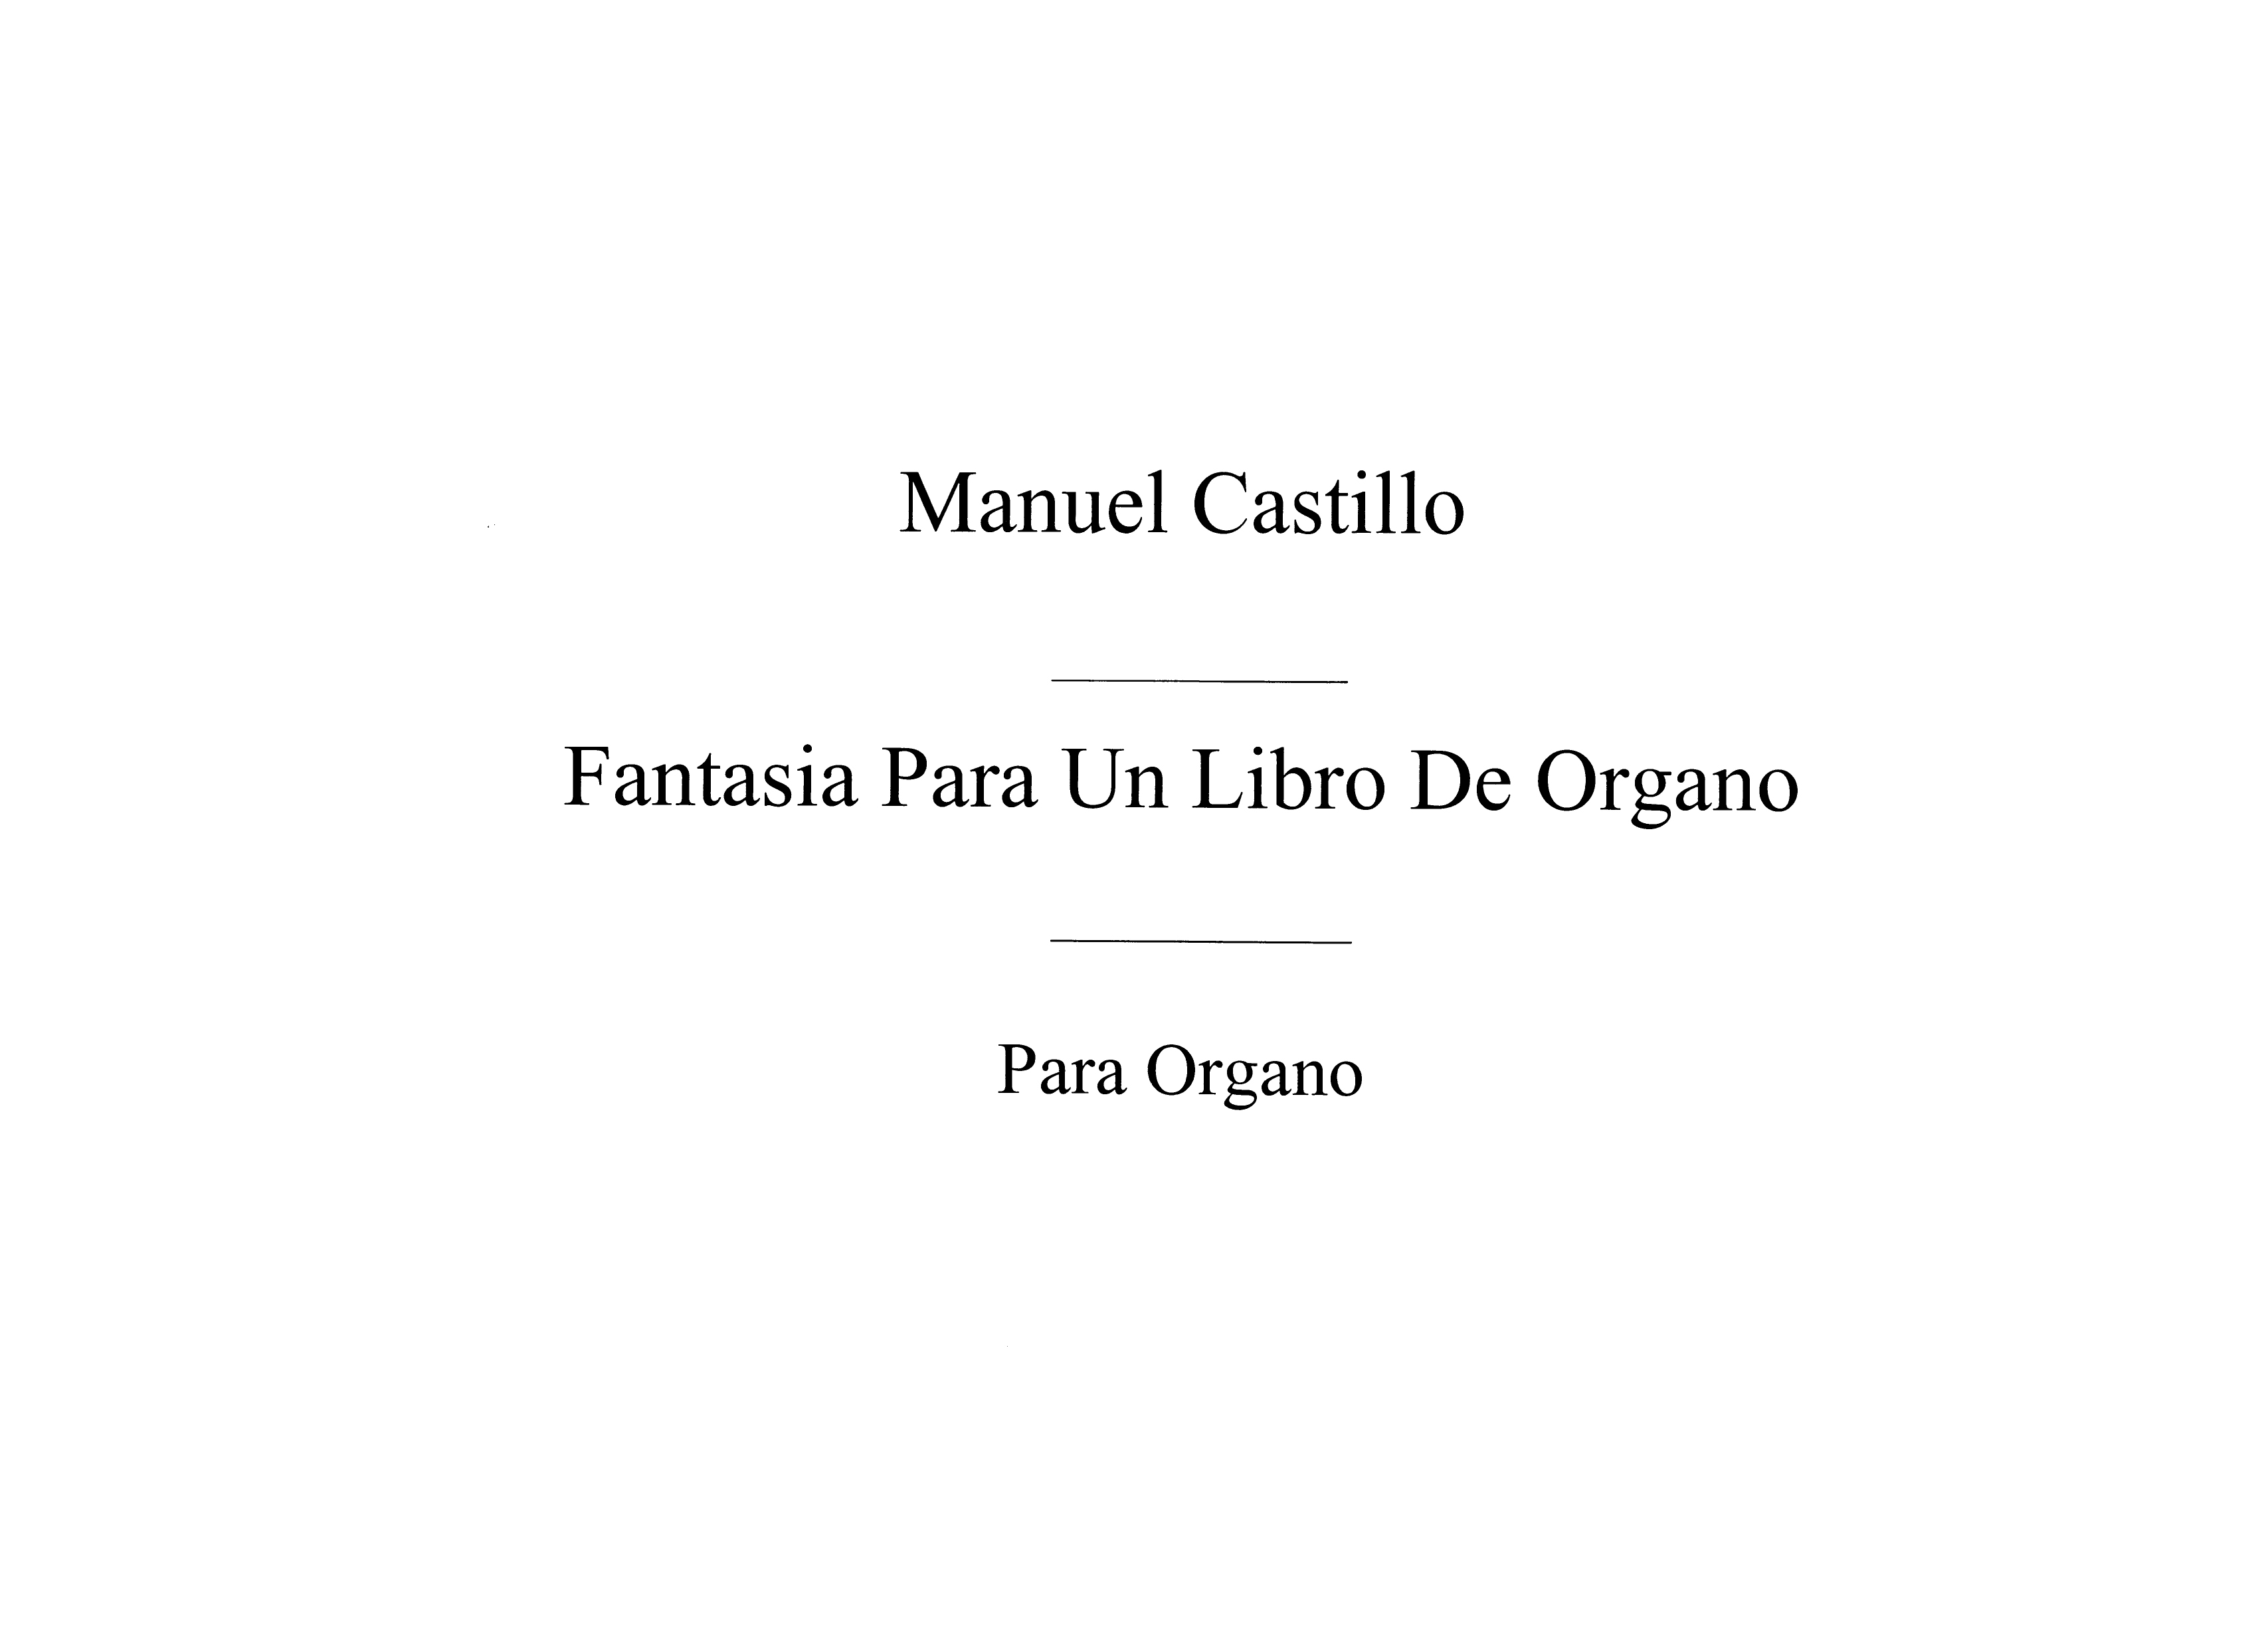 Manuel Del Castillo: Fantasia Para Un Libro De Organo: Organ: Instrumental Work